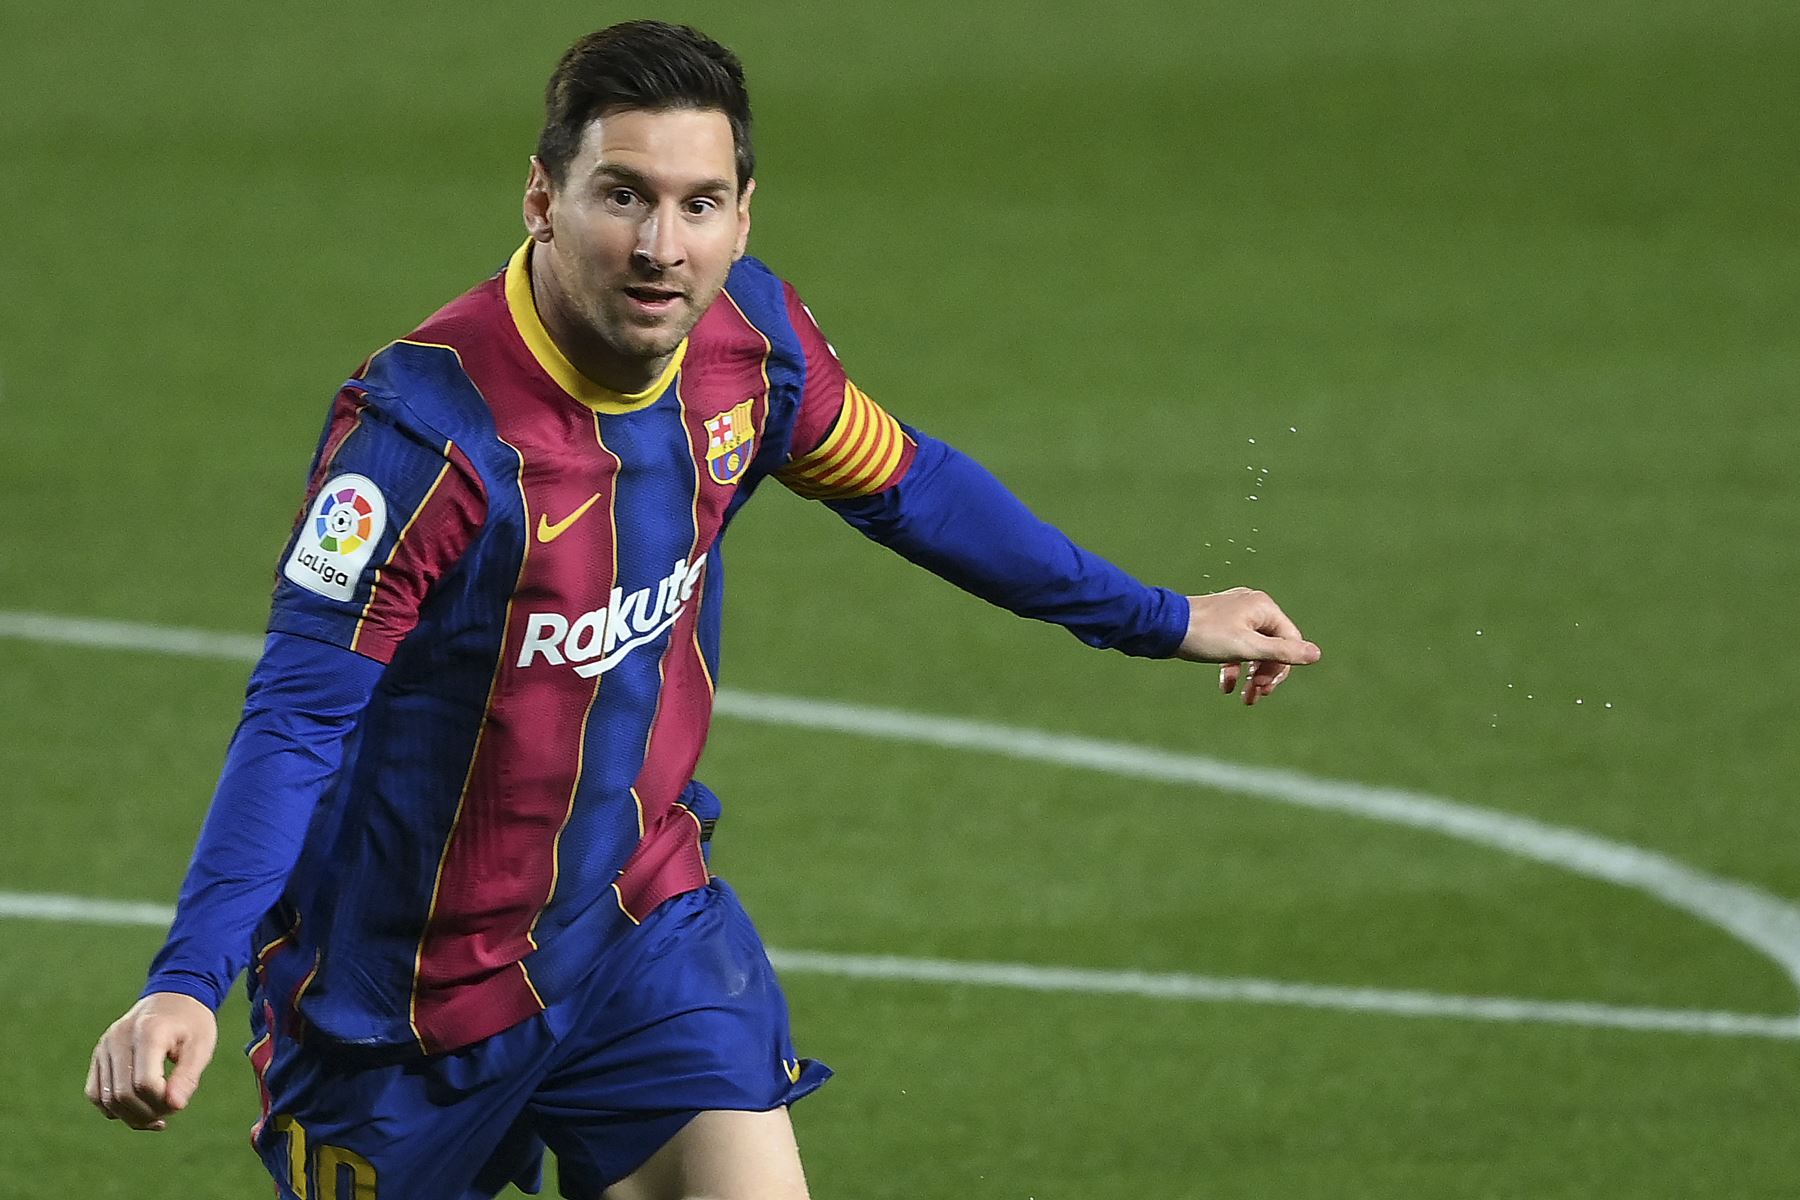 El delantero argentino del Barcelona Lionel Messi celebra tras marcar un gol durante el partido de fútbol de la Liga española. Foto: AFP